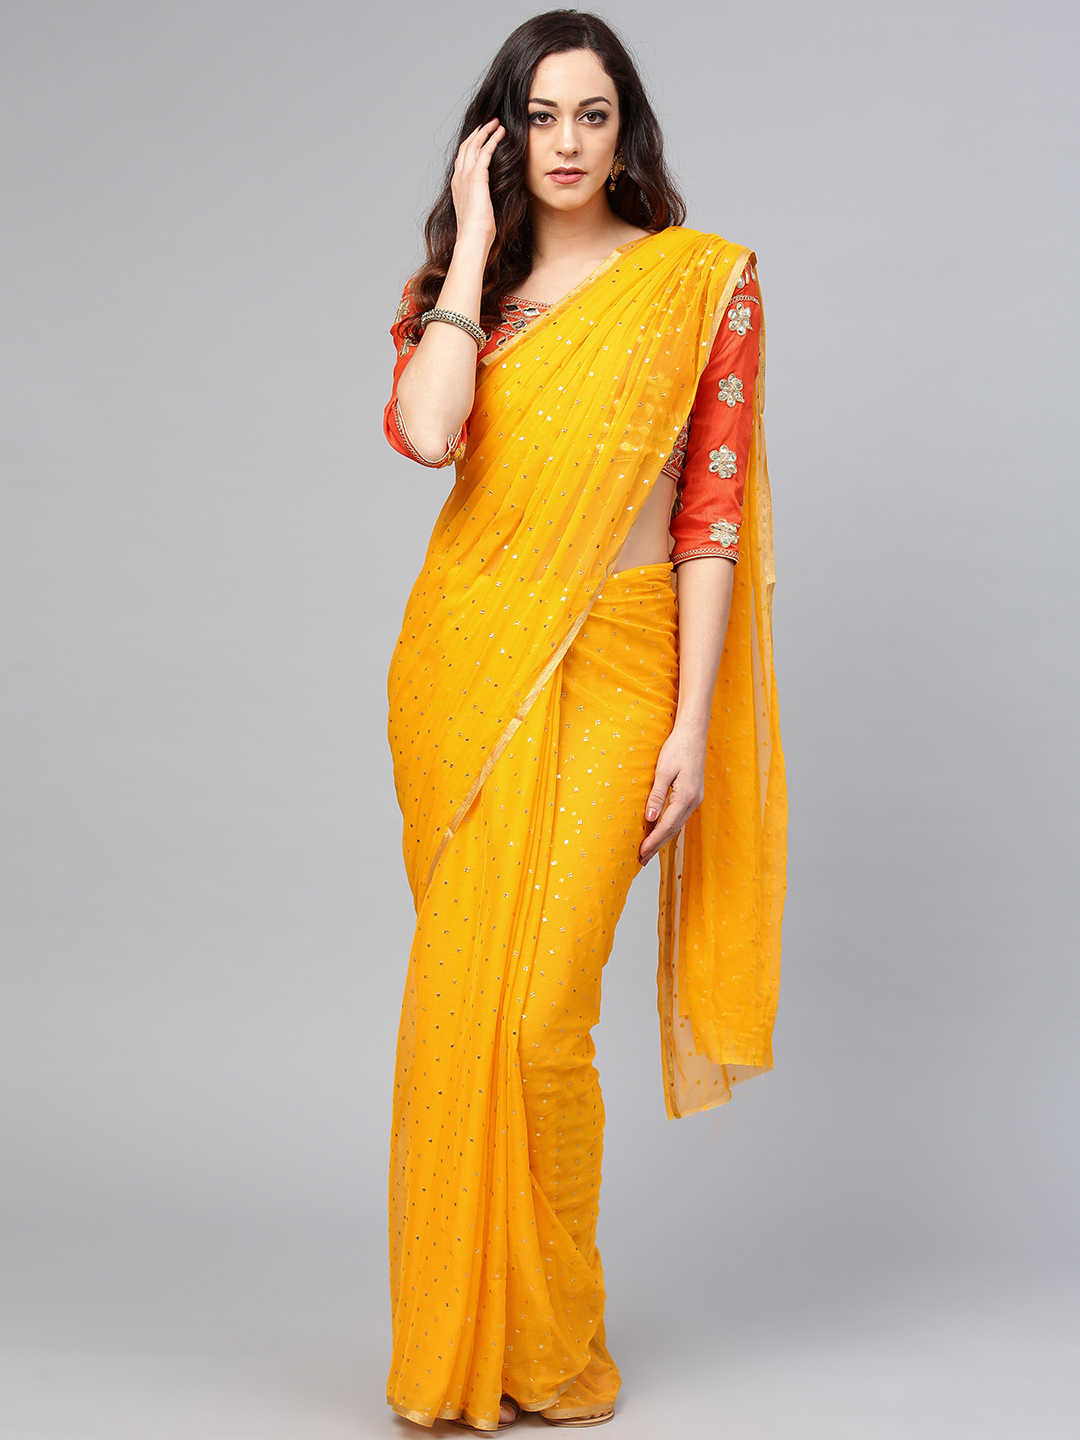 Saree mall Yellow Embellished Saree Price in India